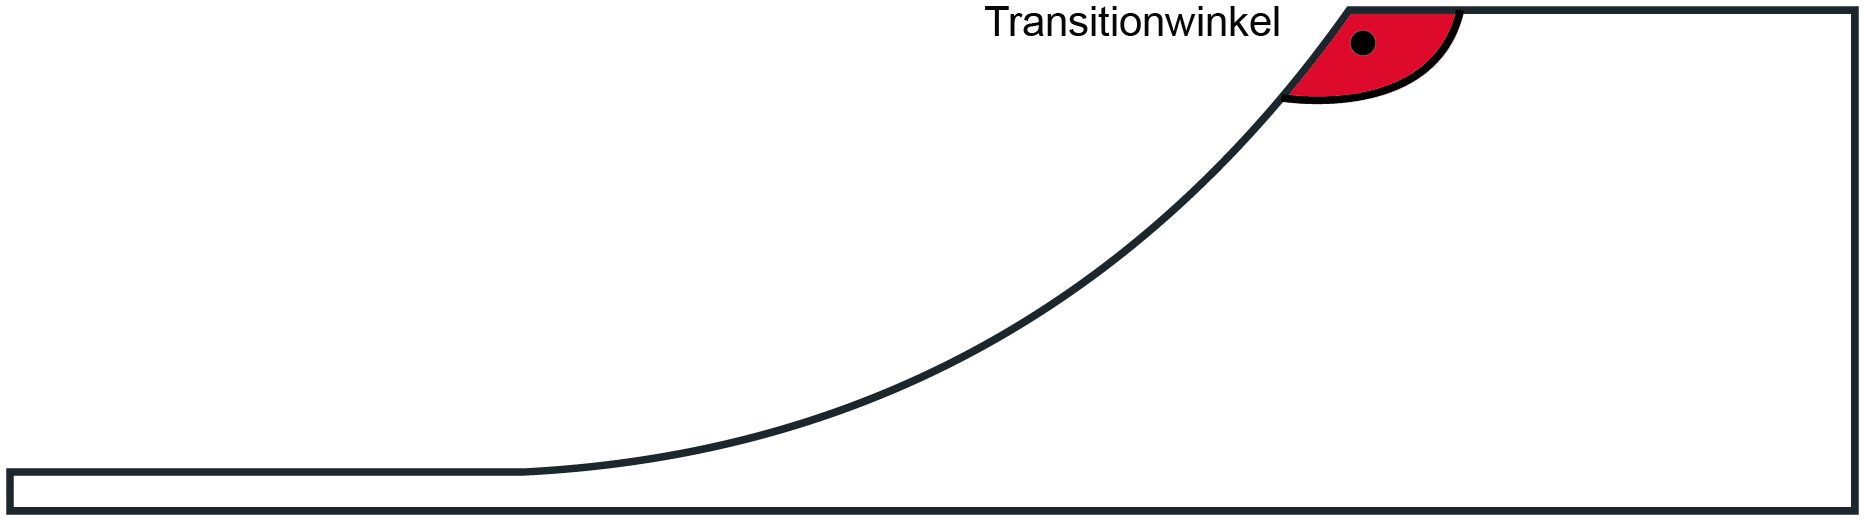 Darstellung des Miniramp Transition-Winkels